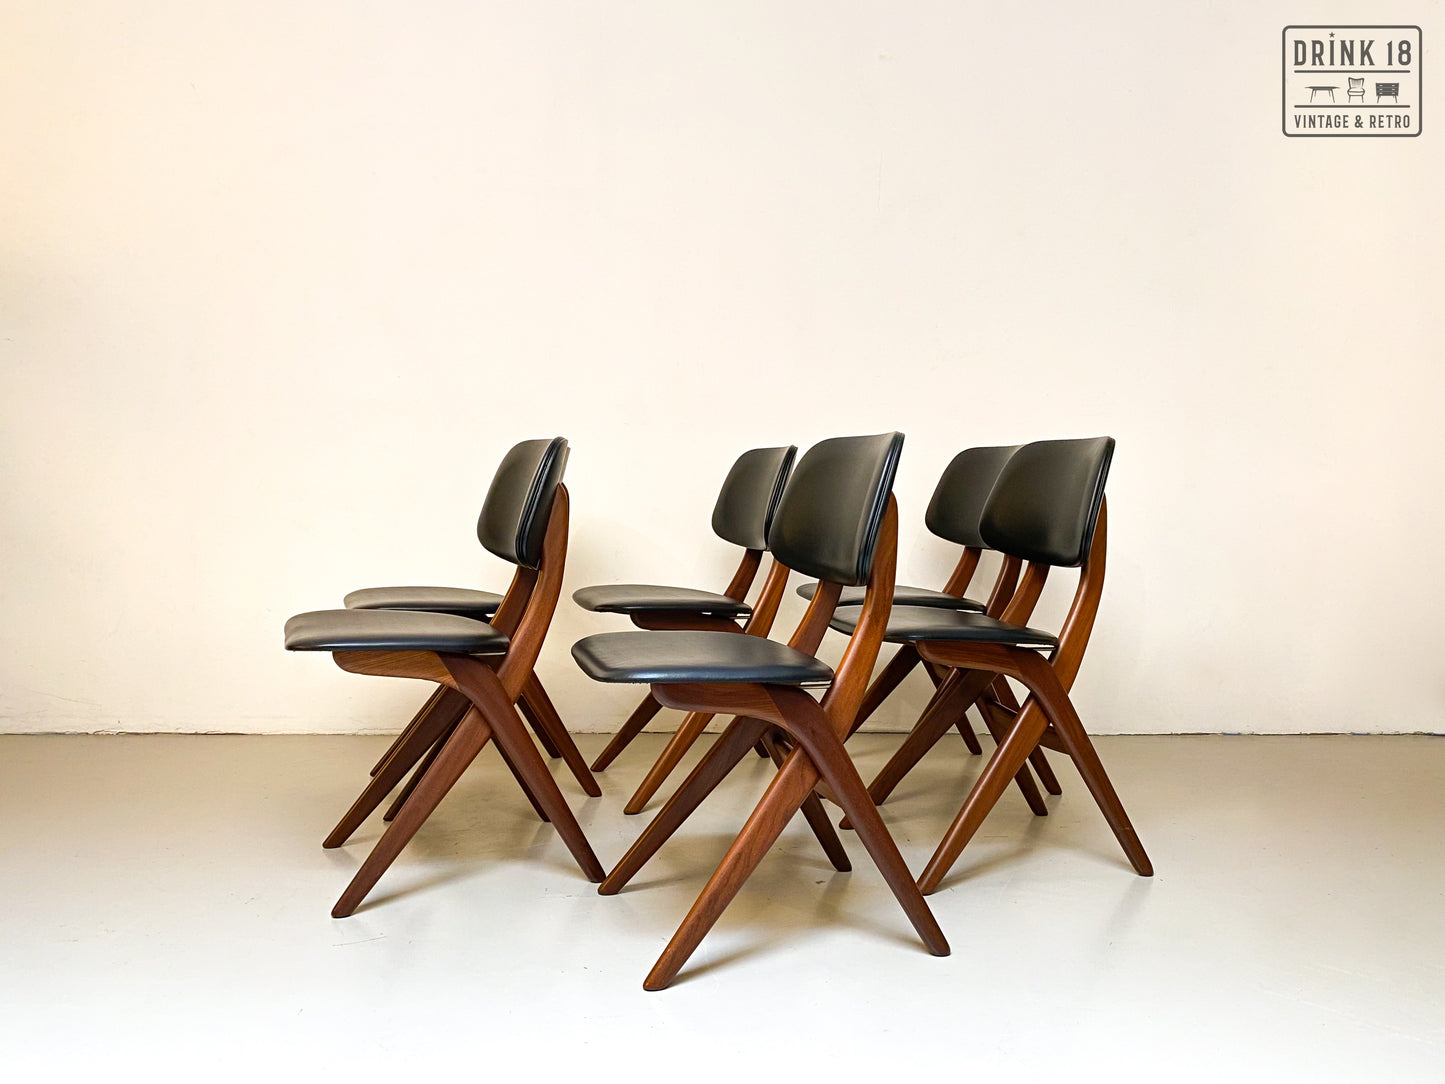 Zes Schaar-serie stoelen - Louis van Teeffelen